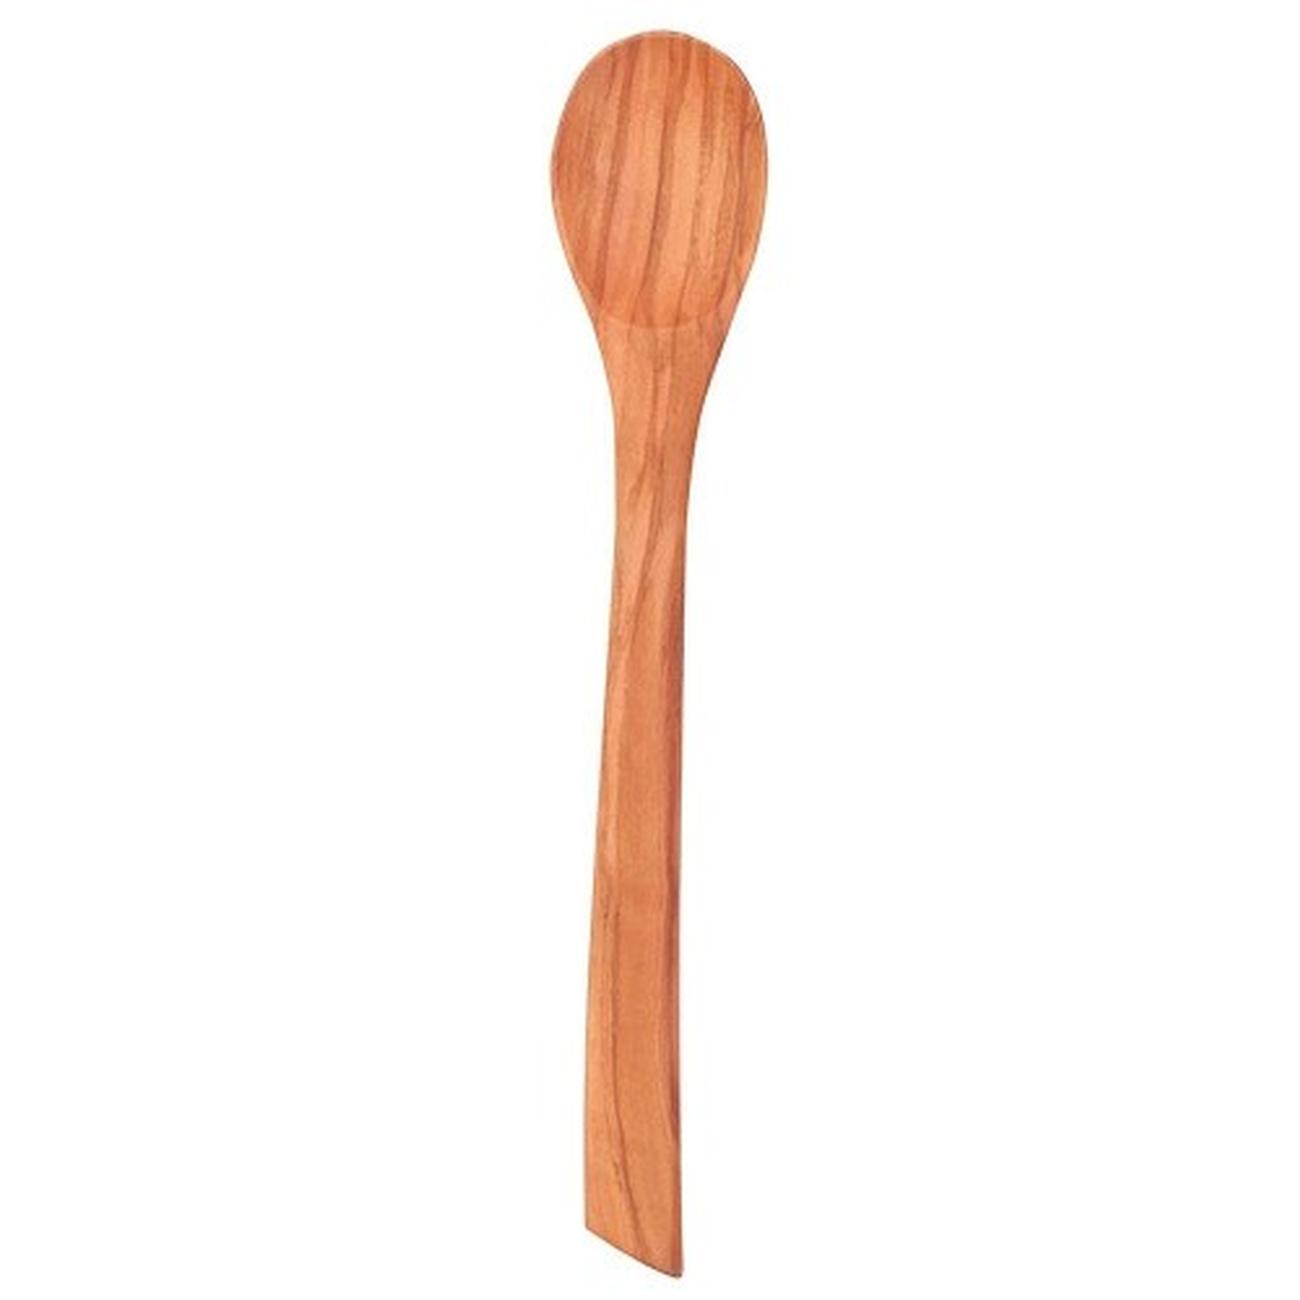 edd-olivewood-mayo-spoon-20-5cm - Eddington's Olivewood Mayonnaise Spoon 20.5cm